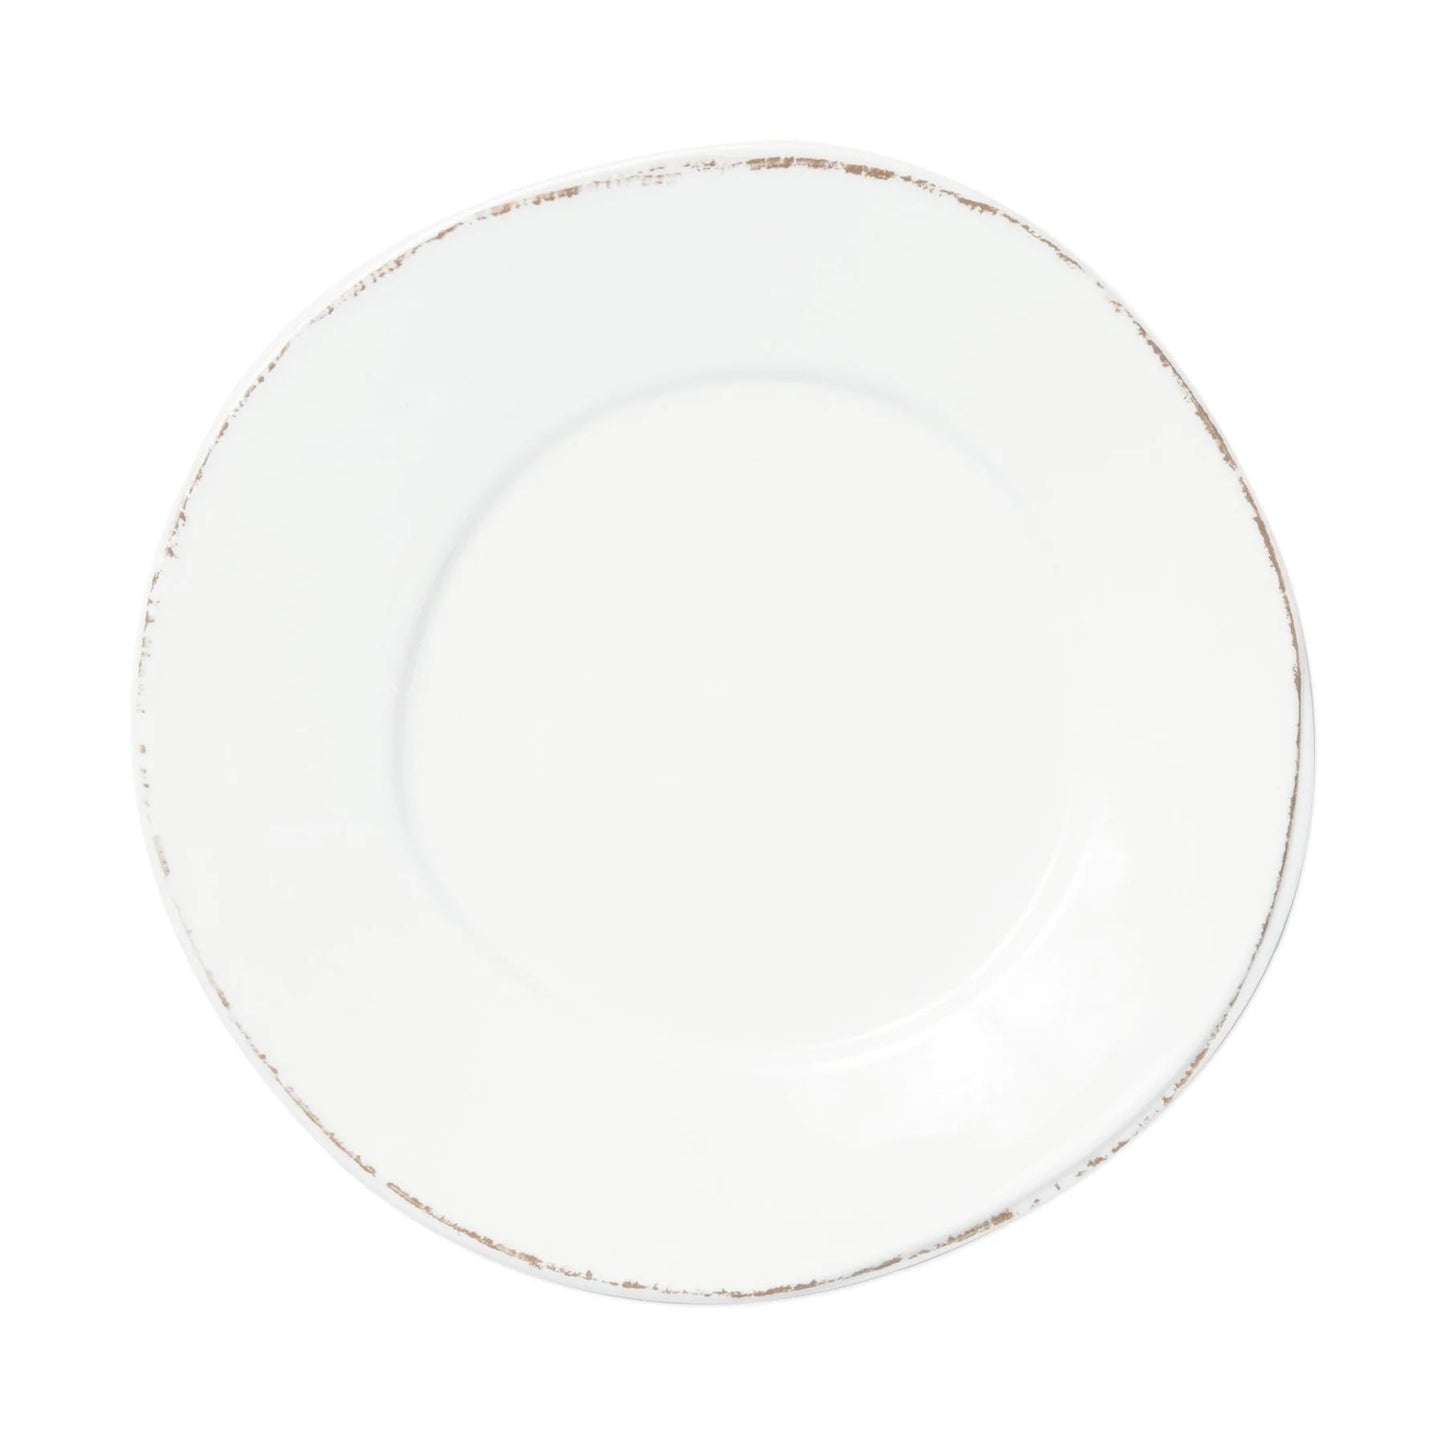 VIETRI MELAMINE LASTRA WHITE DINNER PLATE - Findlay Rowe Designs